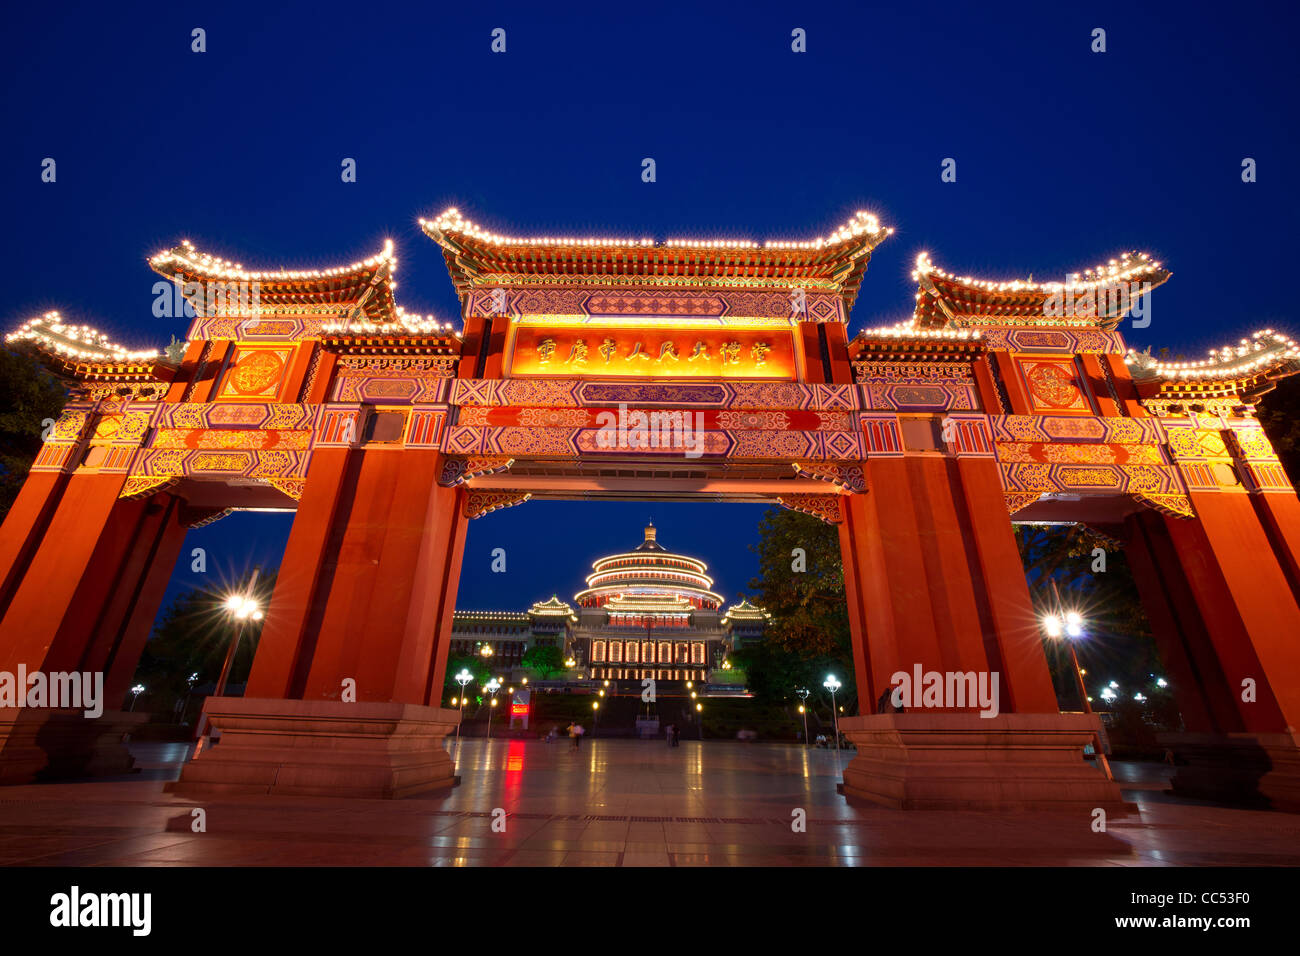 La porte et la grande salle de scène de nuit,Chongqing, Chine Banque D'Images